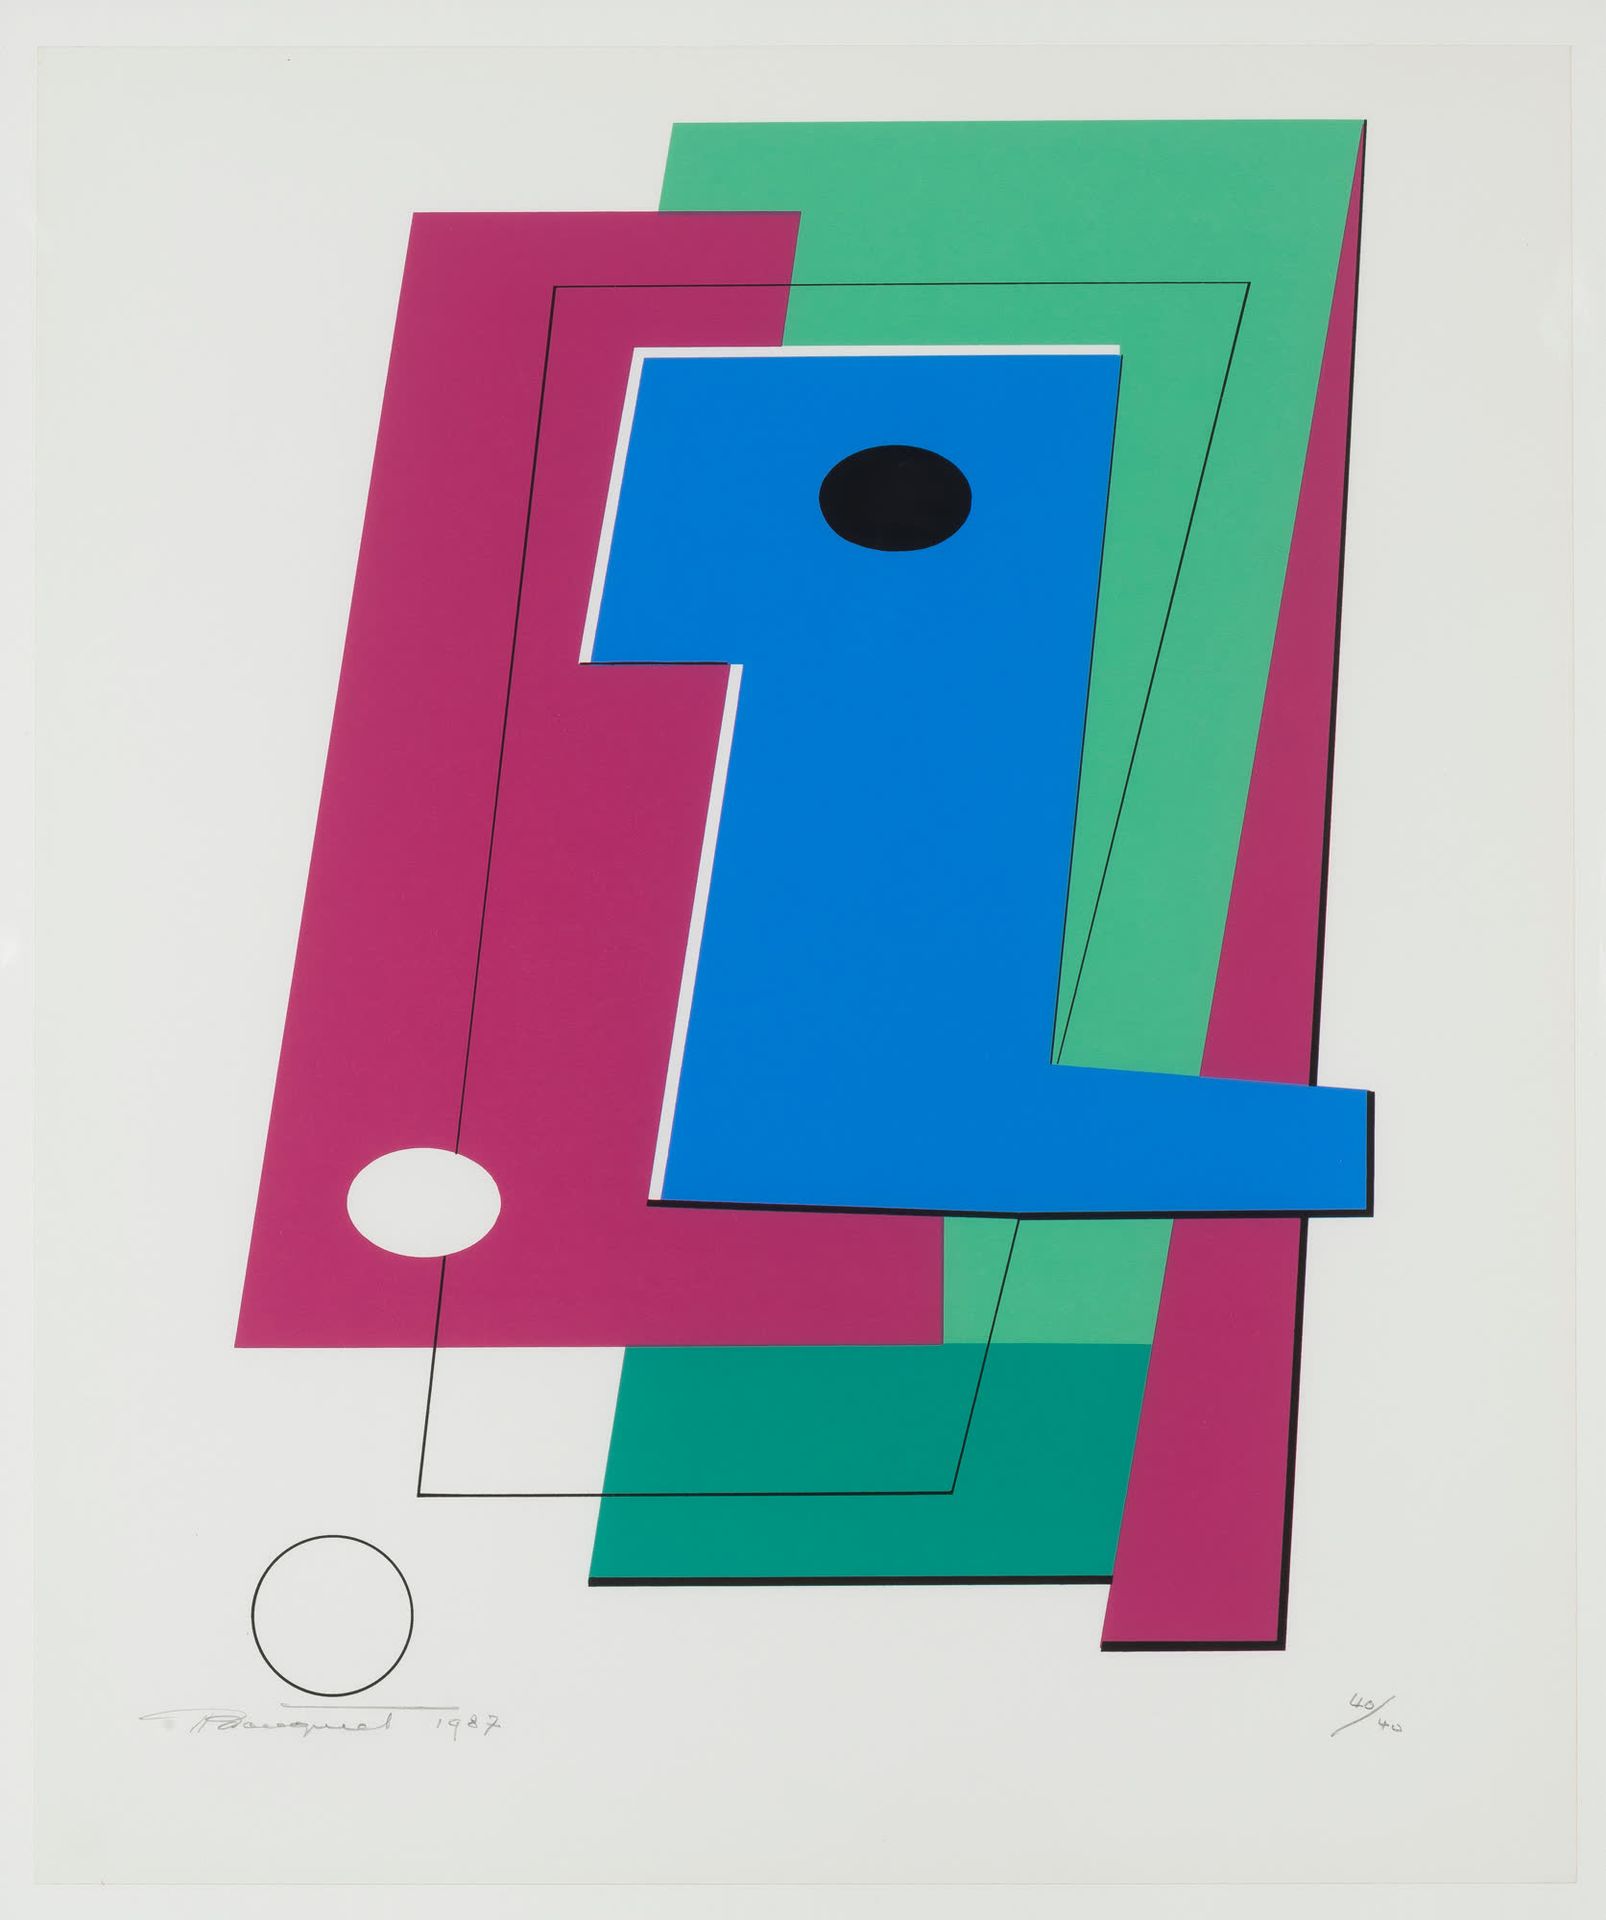 Marcel-Louis Baugniet (1896-1995) Composición 1987.
Serigrafía en color sobre vi&hellip;